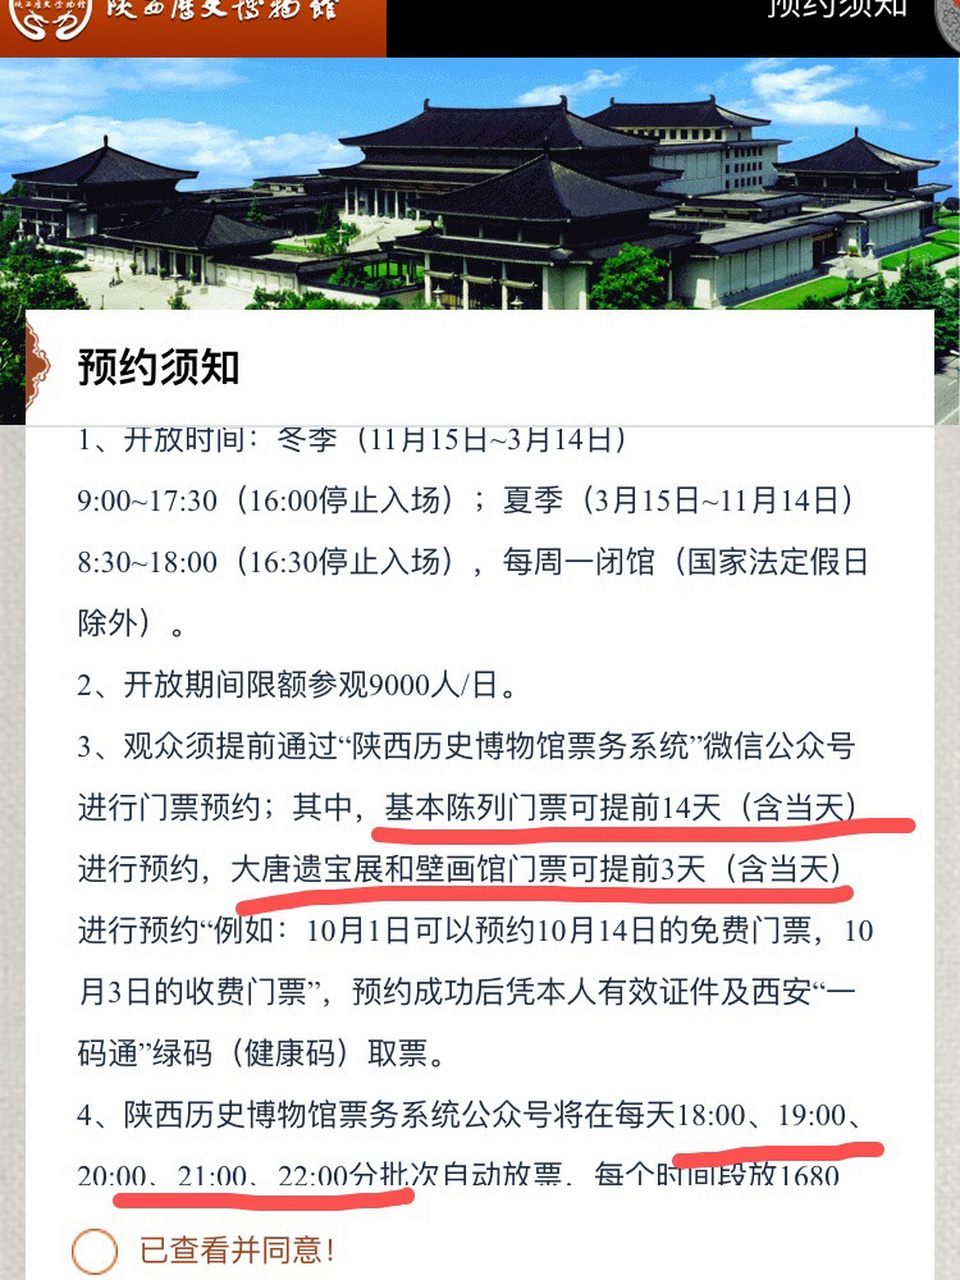 陕西历史博物馆 预约全攻略 【2022更新】现在好像都合并到陕西历史